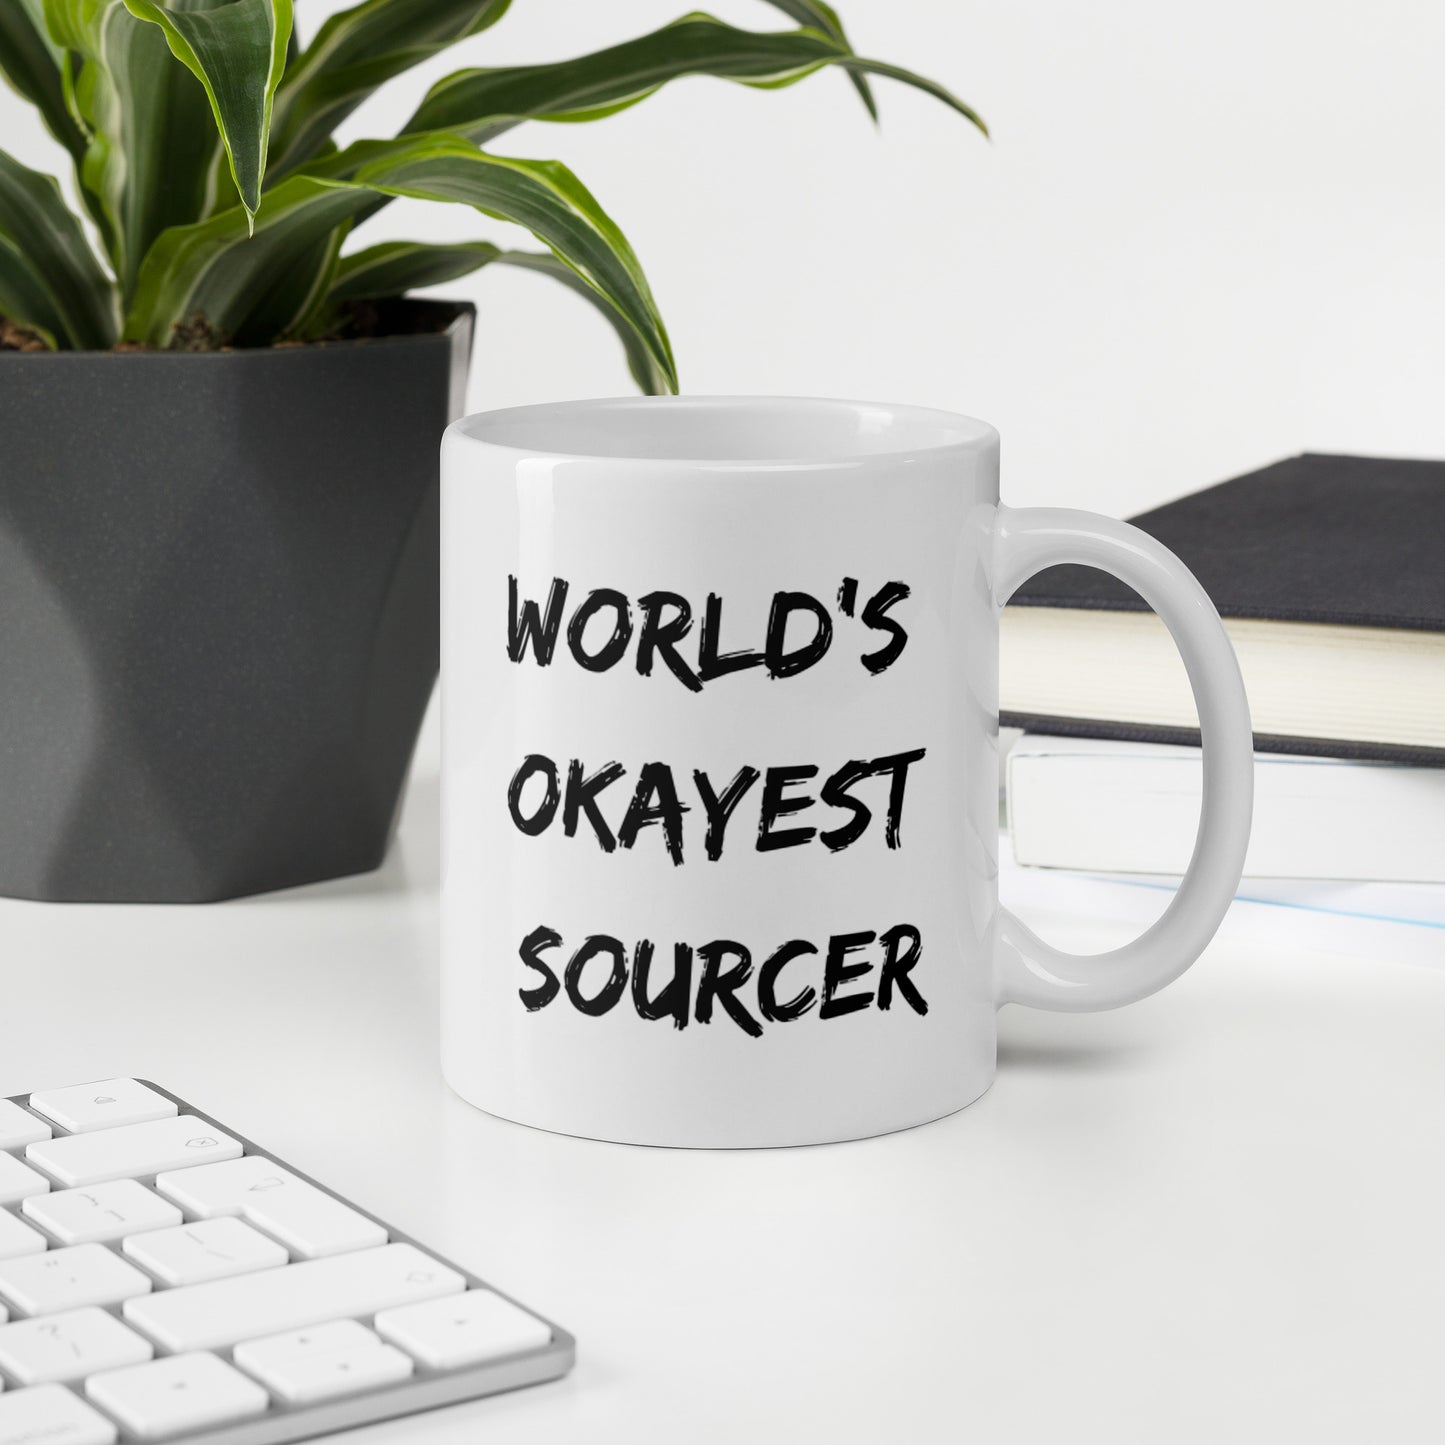 World's Okayest Sourcer - White glossy mug